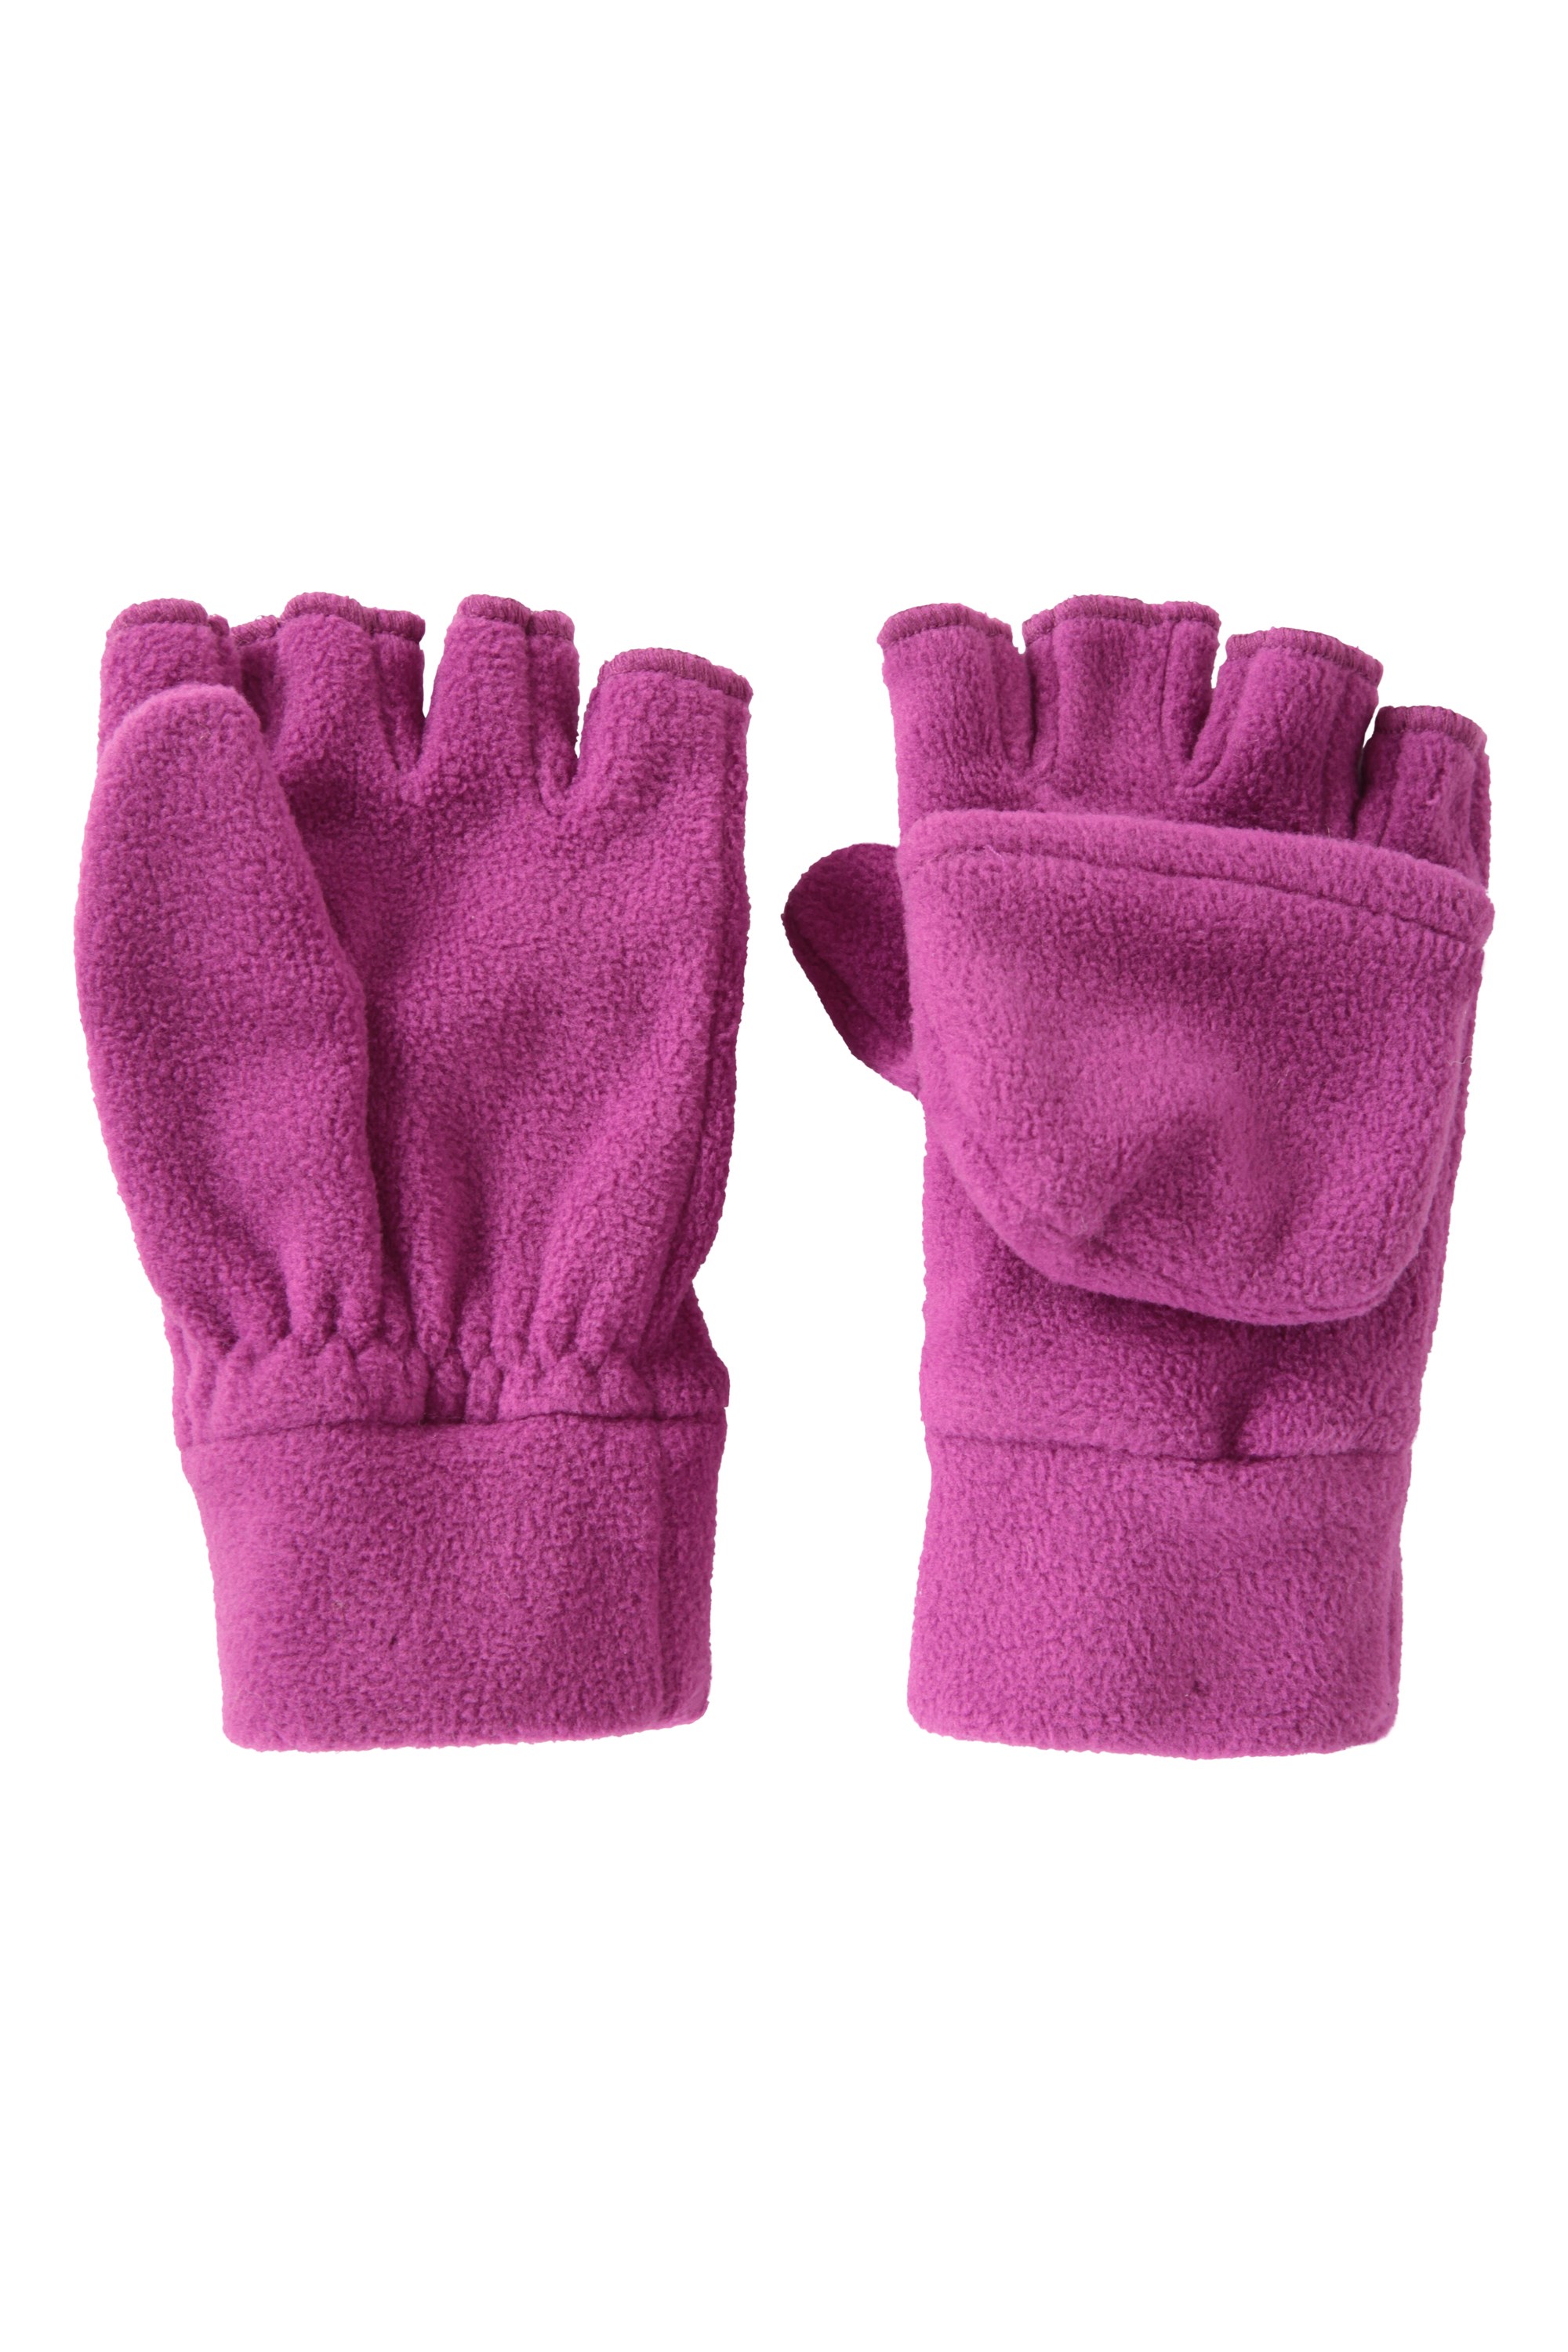 Uppada Kids Boys Winter Gloves Convertible Fingerless Gloves Children Gloves Half Finger Knitted Gloves Outdoor 